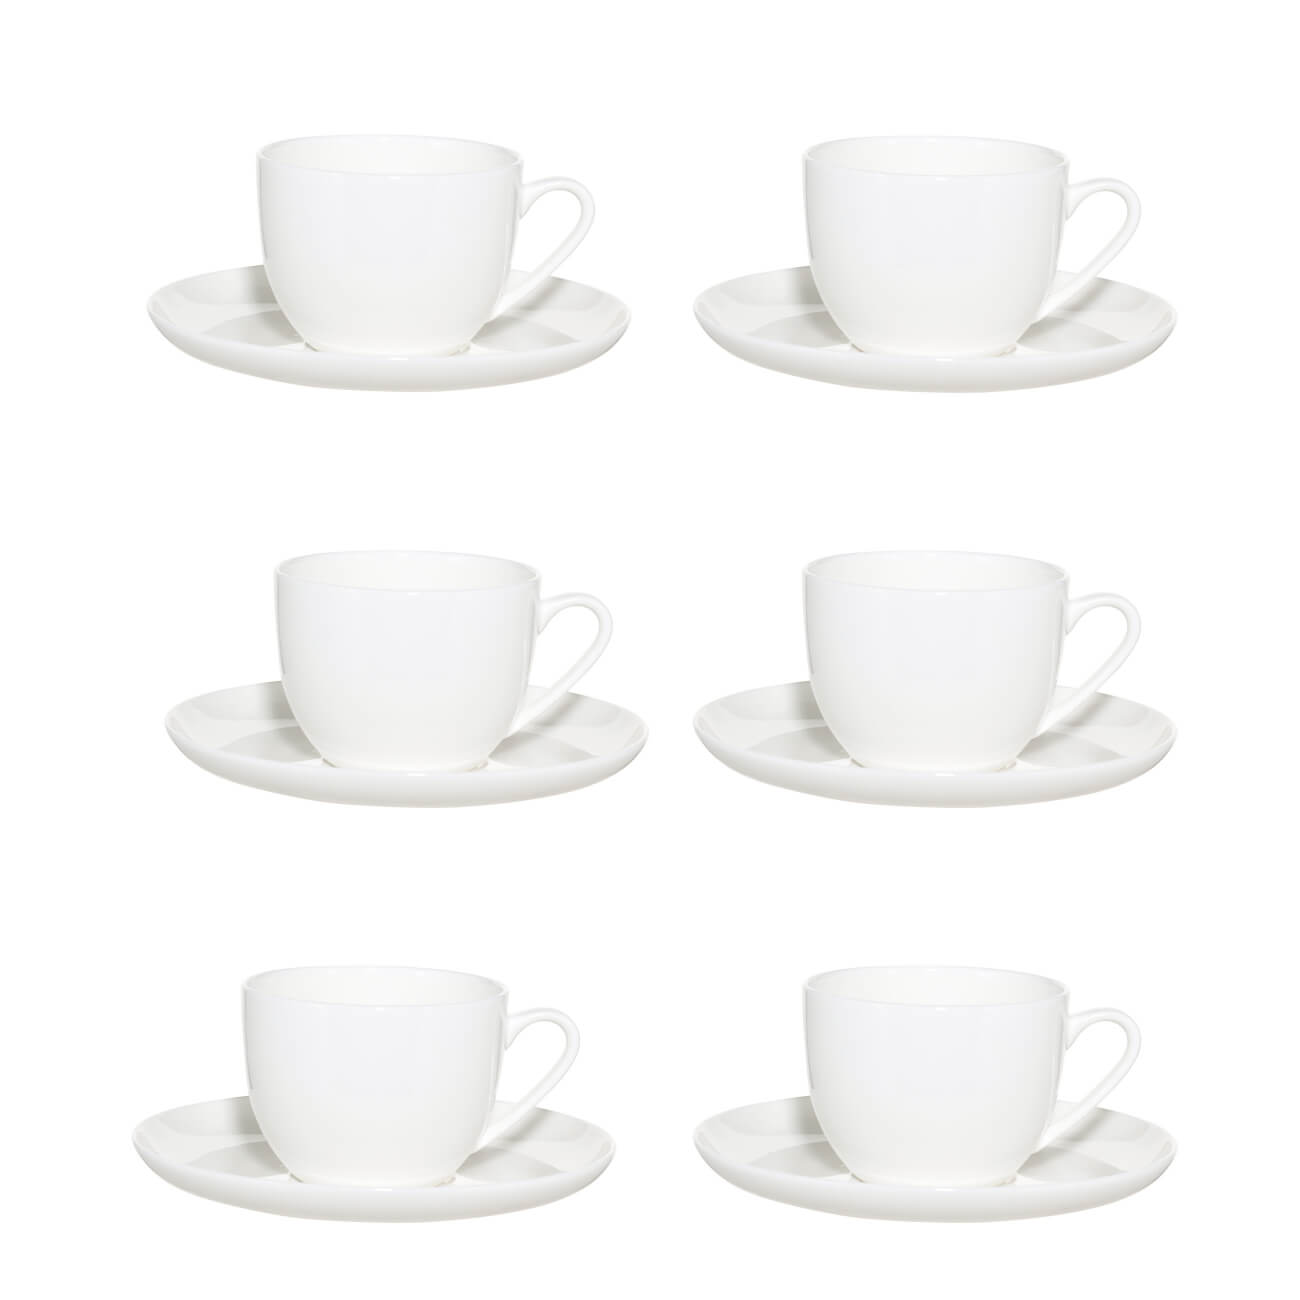 Пара чайная, 6 перс, 12 пр, 250 мл, фарфор F, белая, Ideal white